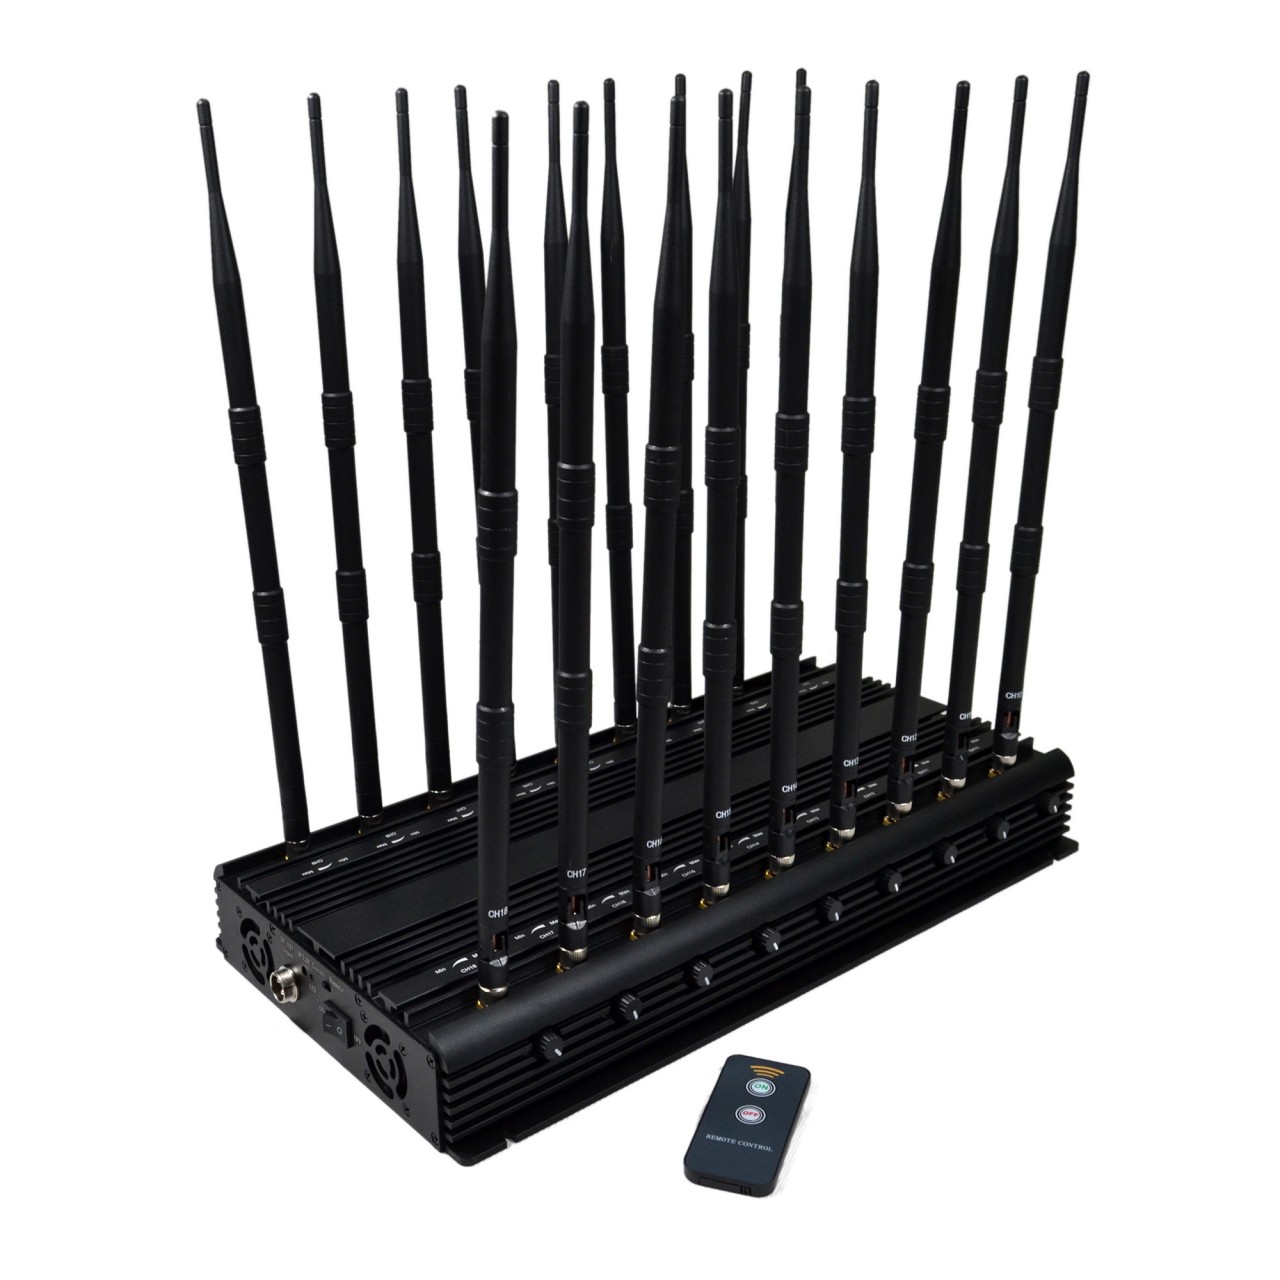 18 Antennas mobile phone signal blocker